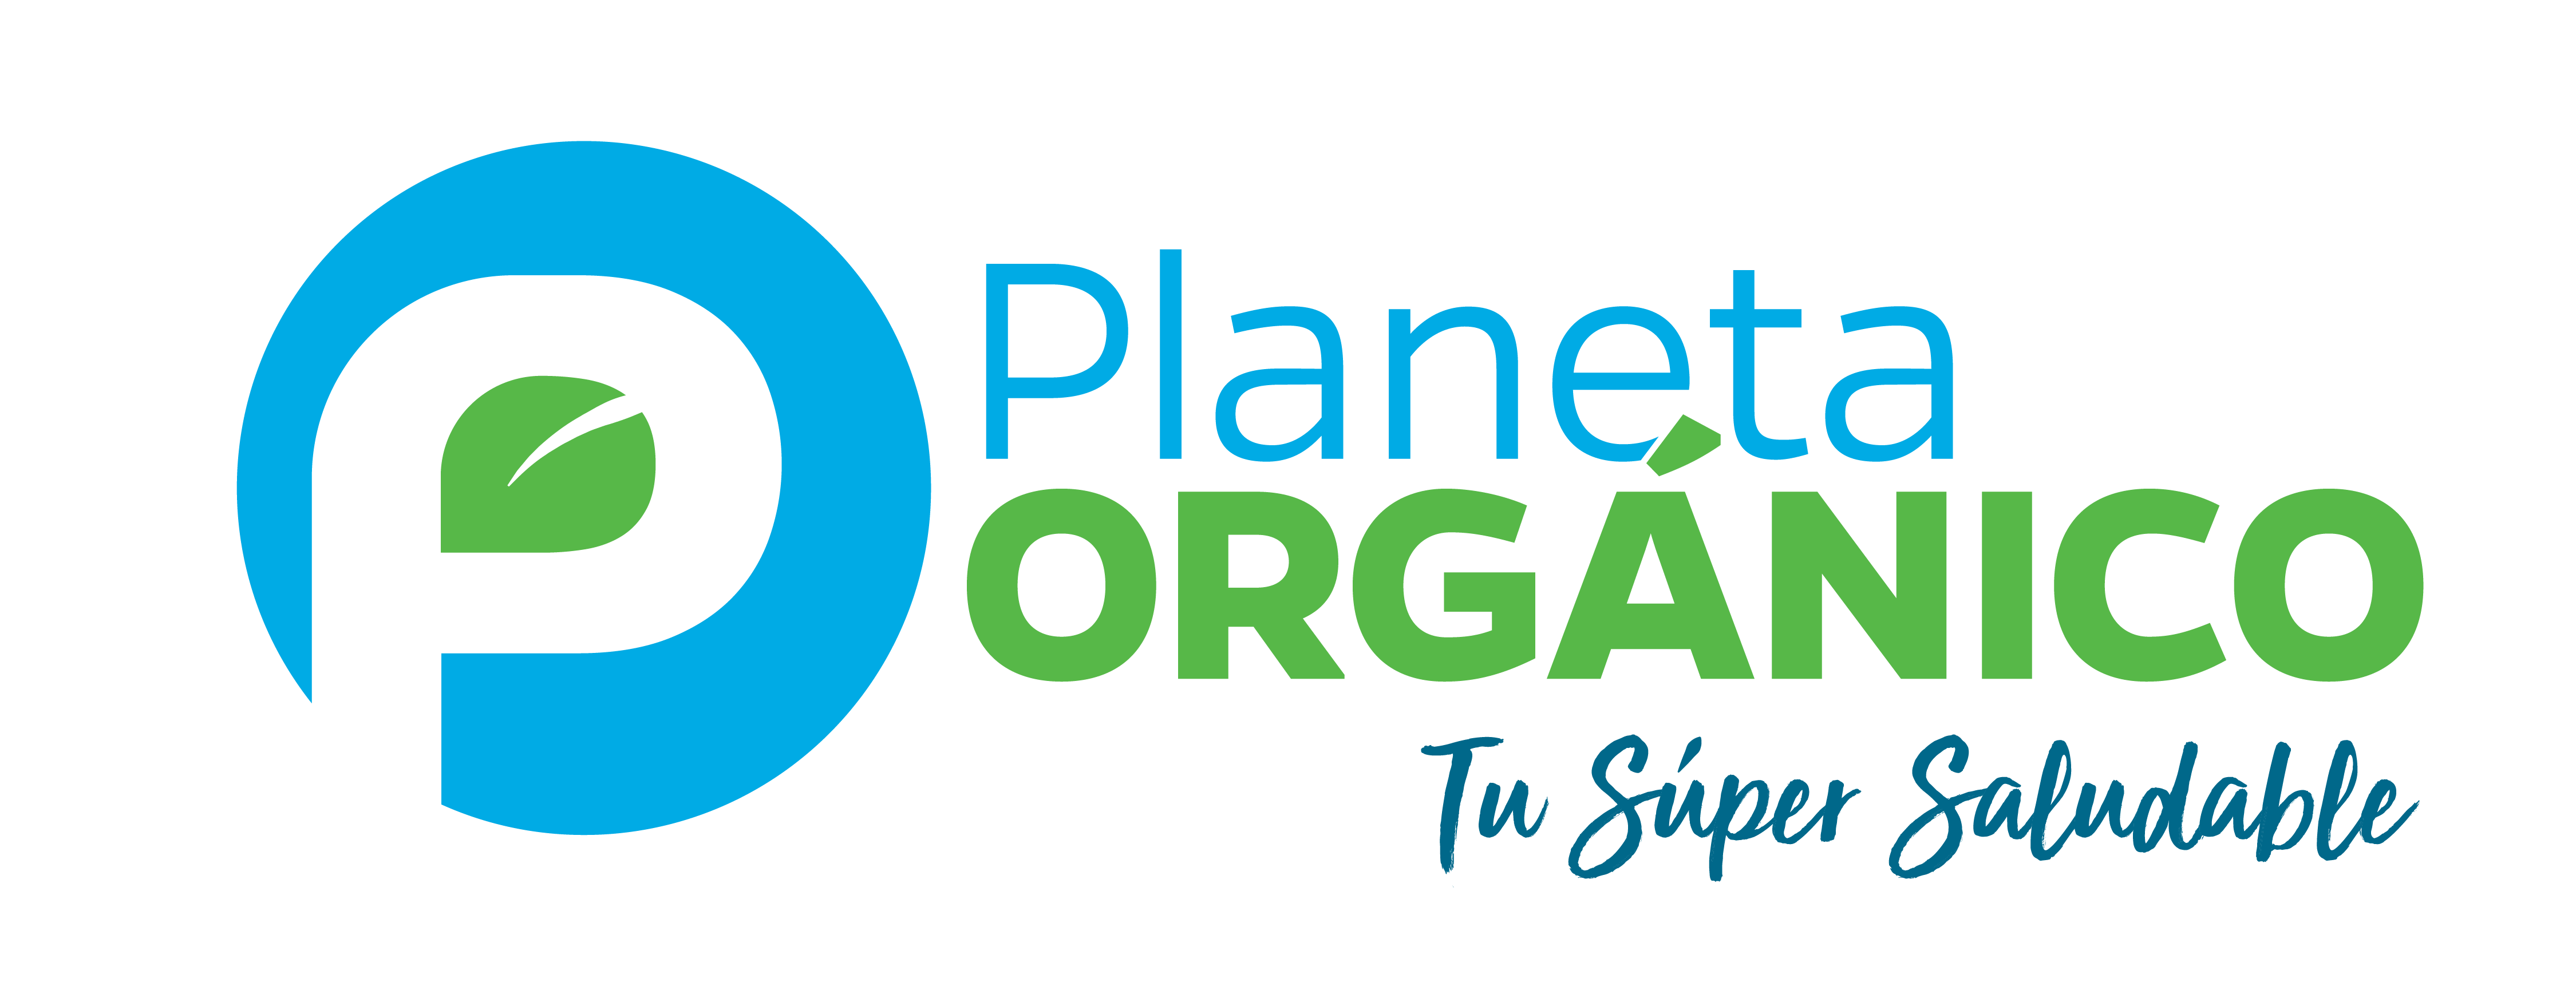 Planeta Organico-01 (1)